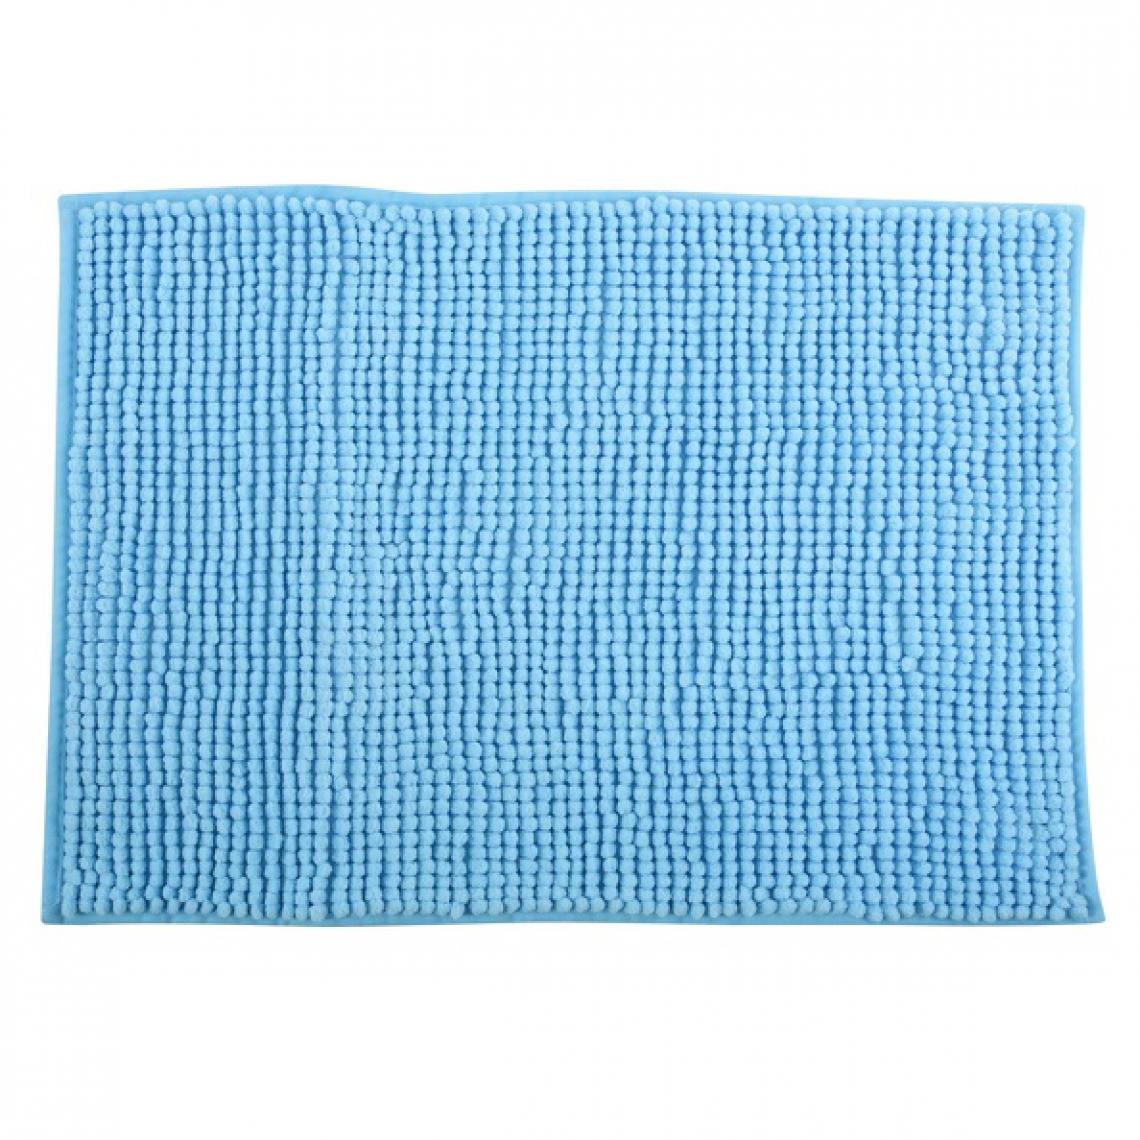 Msv - MSV Tapis de bain Microfibre CHENILLE 40x60cm Bleu Ciel - Tapis